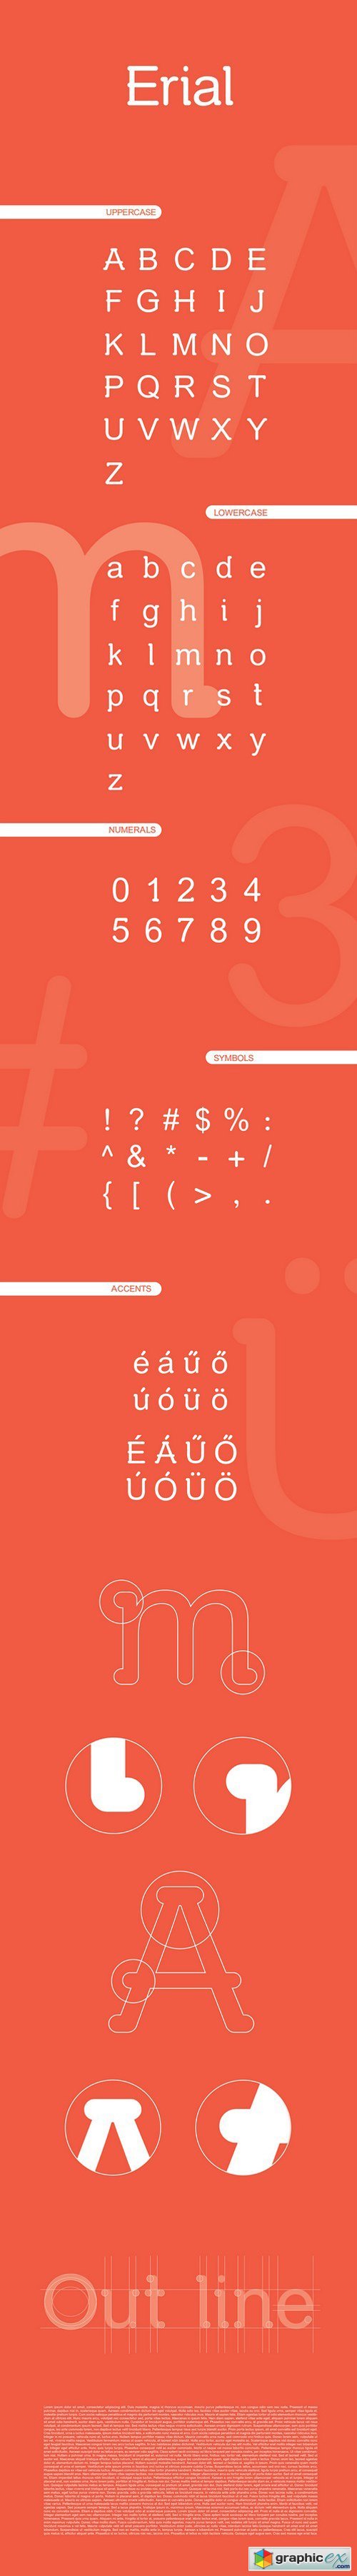 Erial Typeface